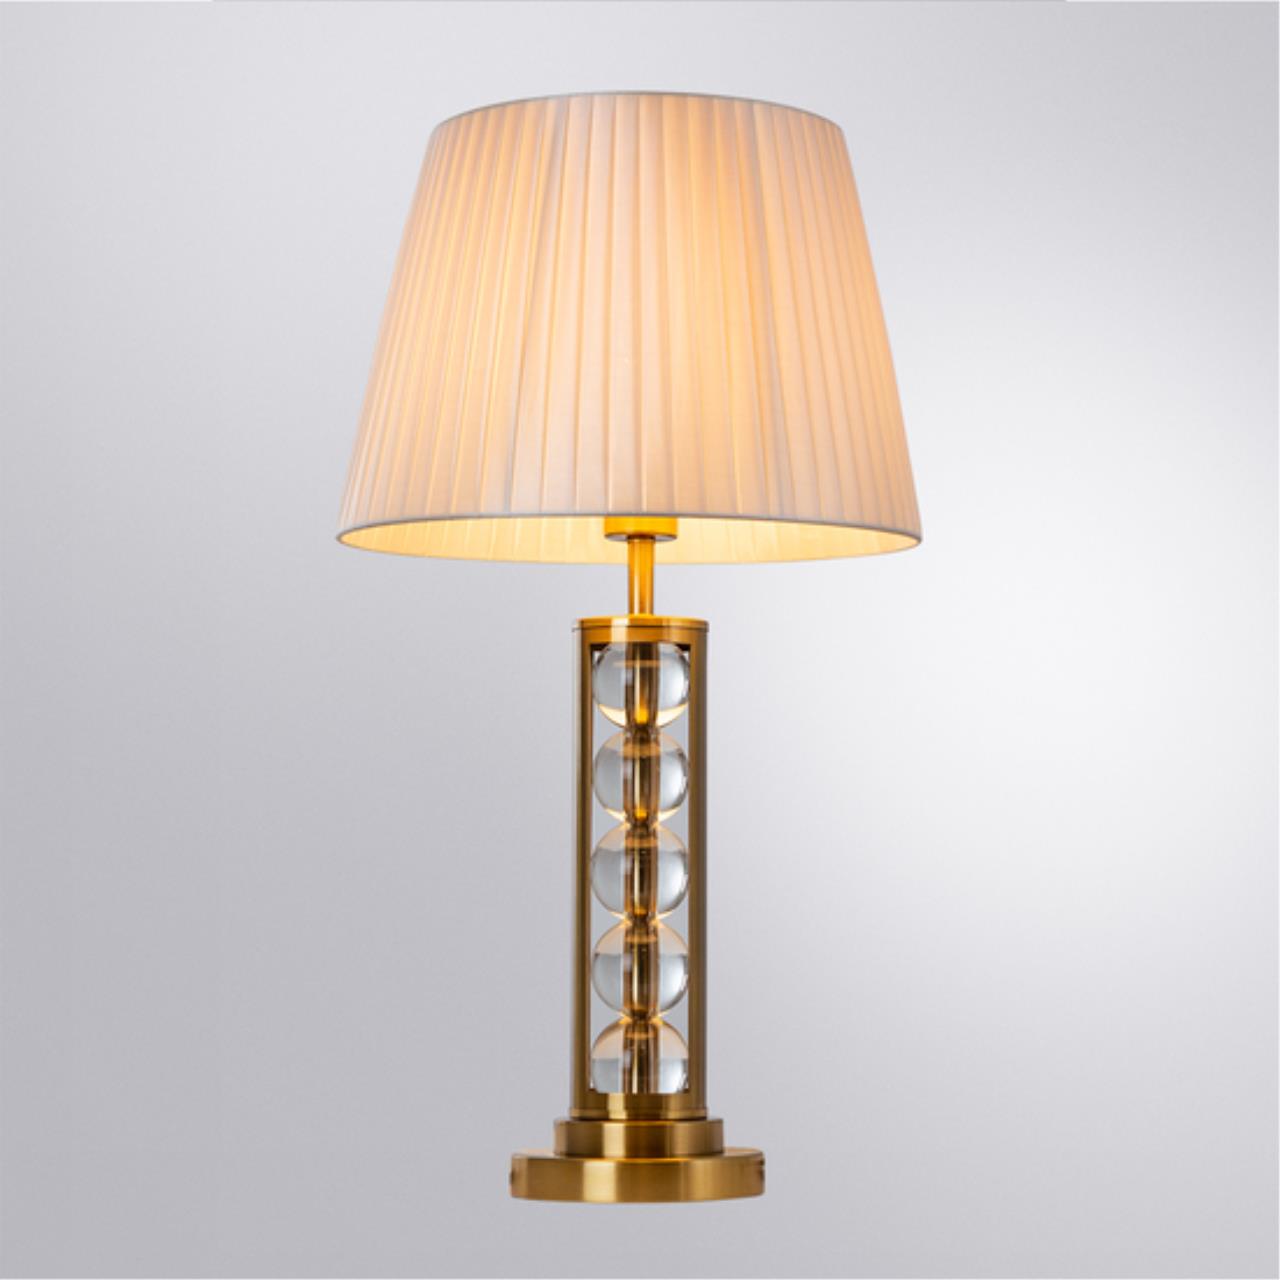 Интерьерная настольная лампа Arte lamp A4062LT-1PB